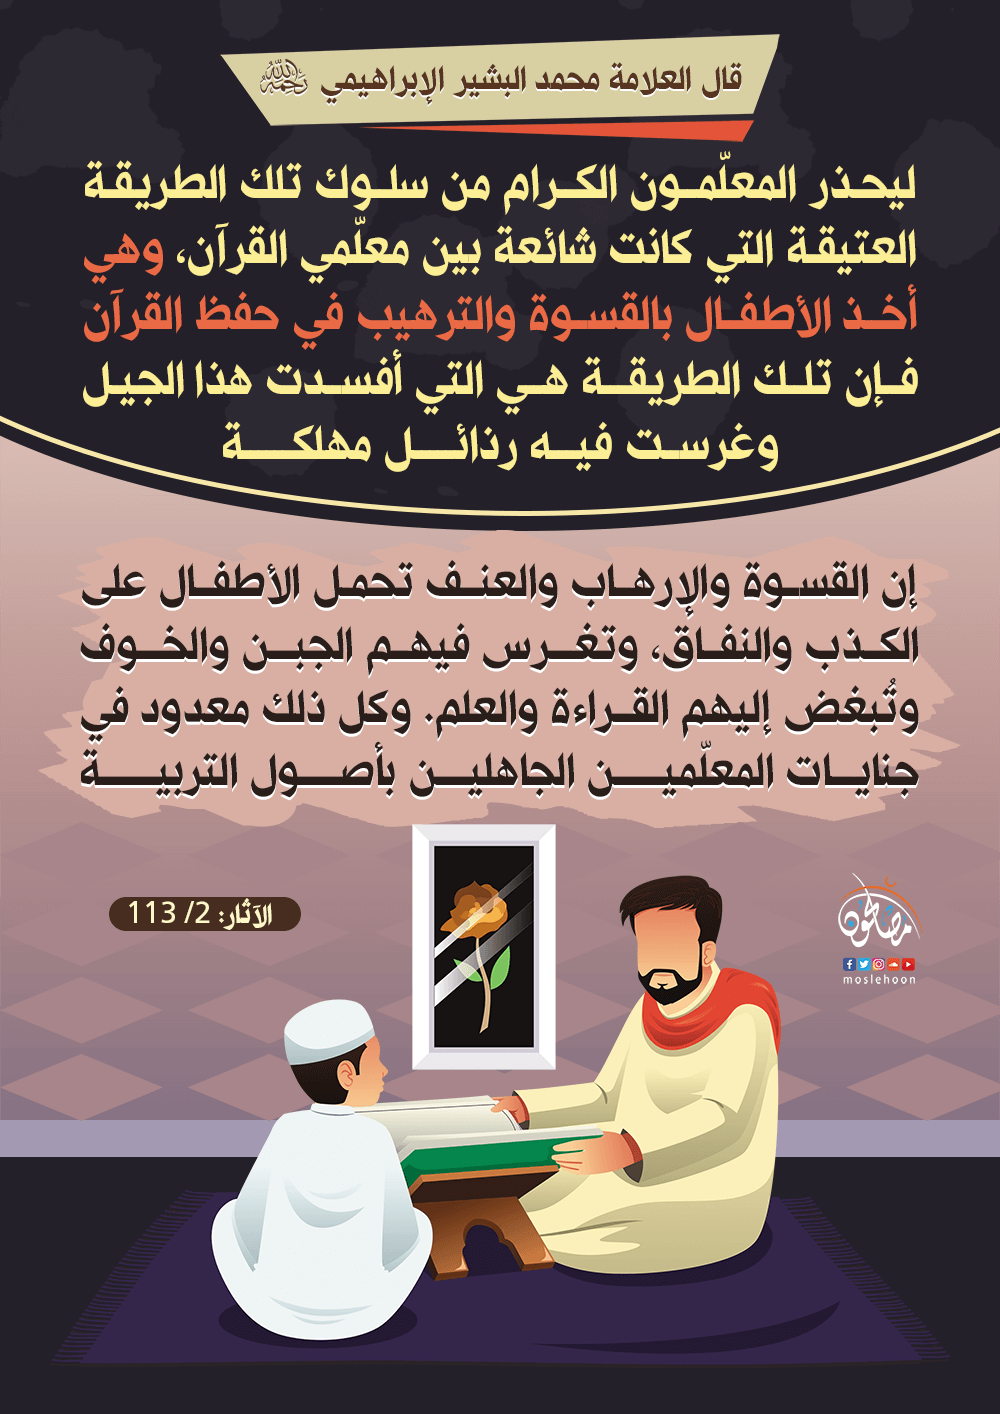 الحذر من أخذ الأطفال بالقسوة والترهيب في حفظ القرآن